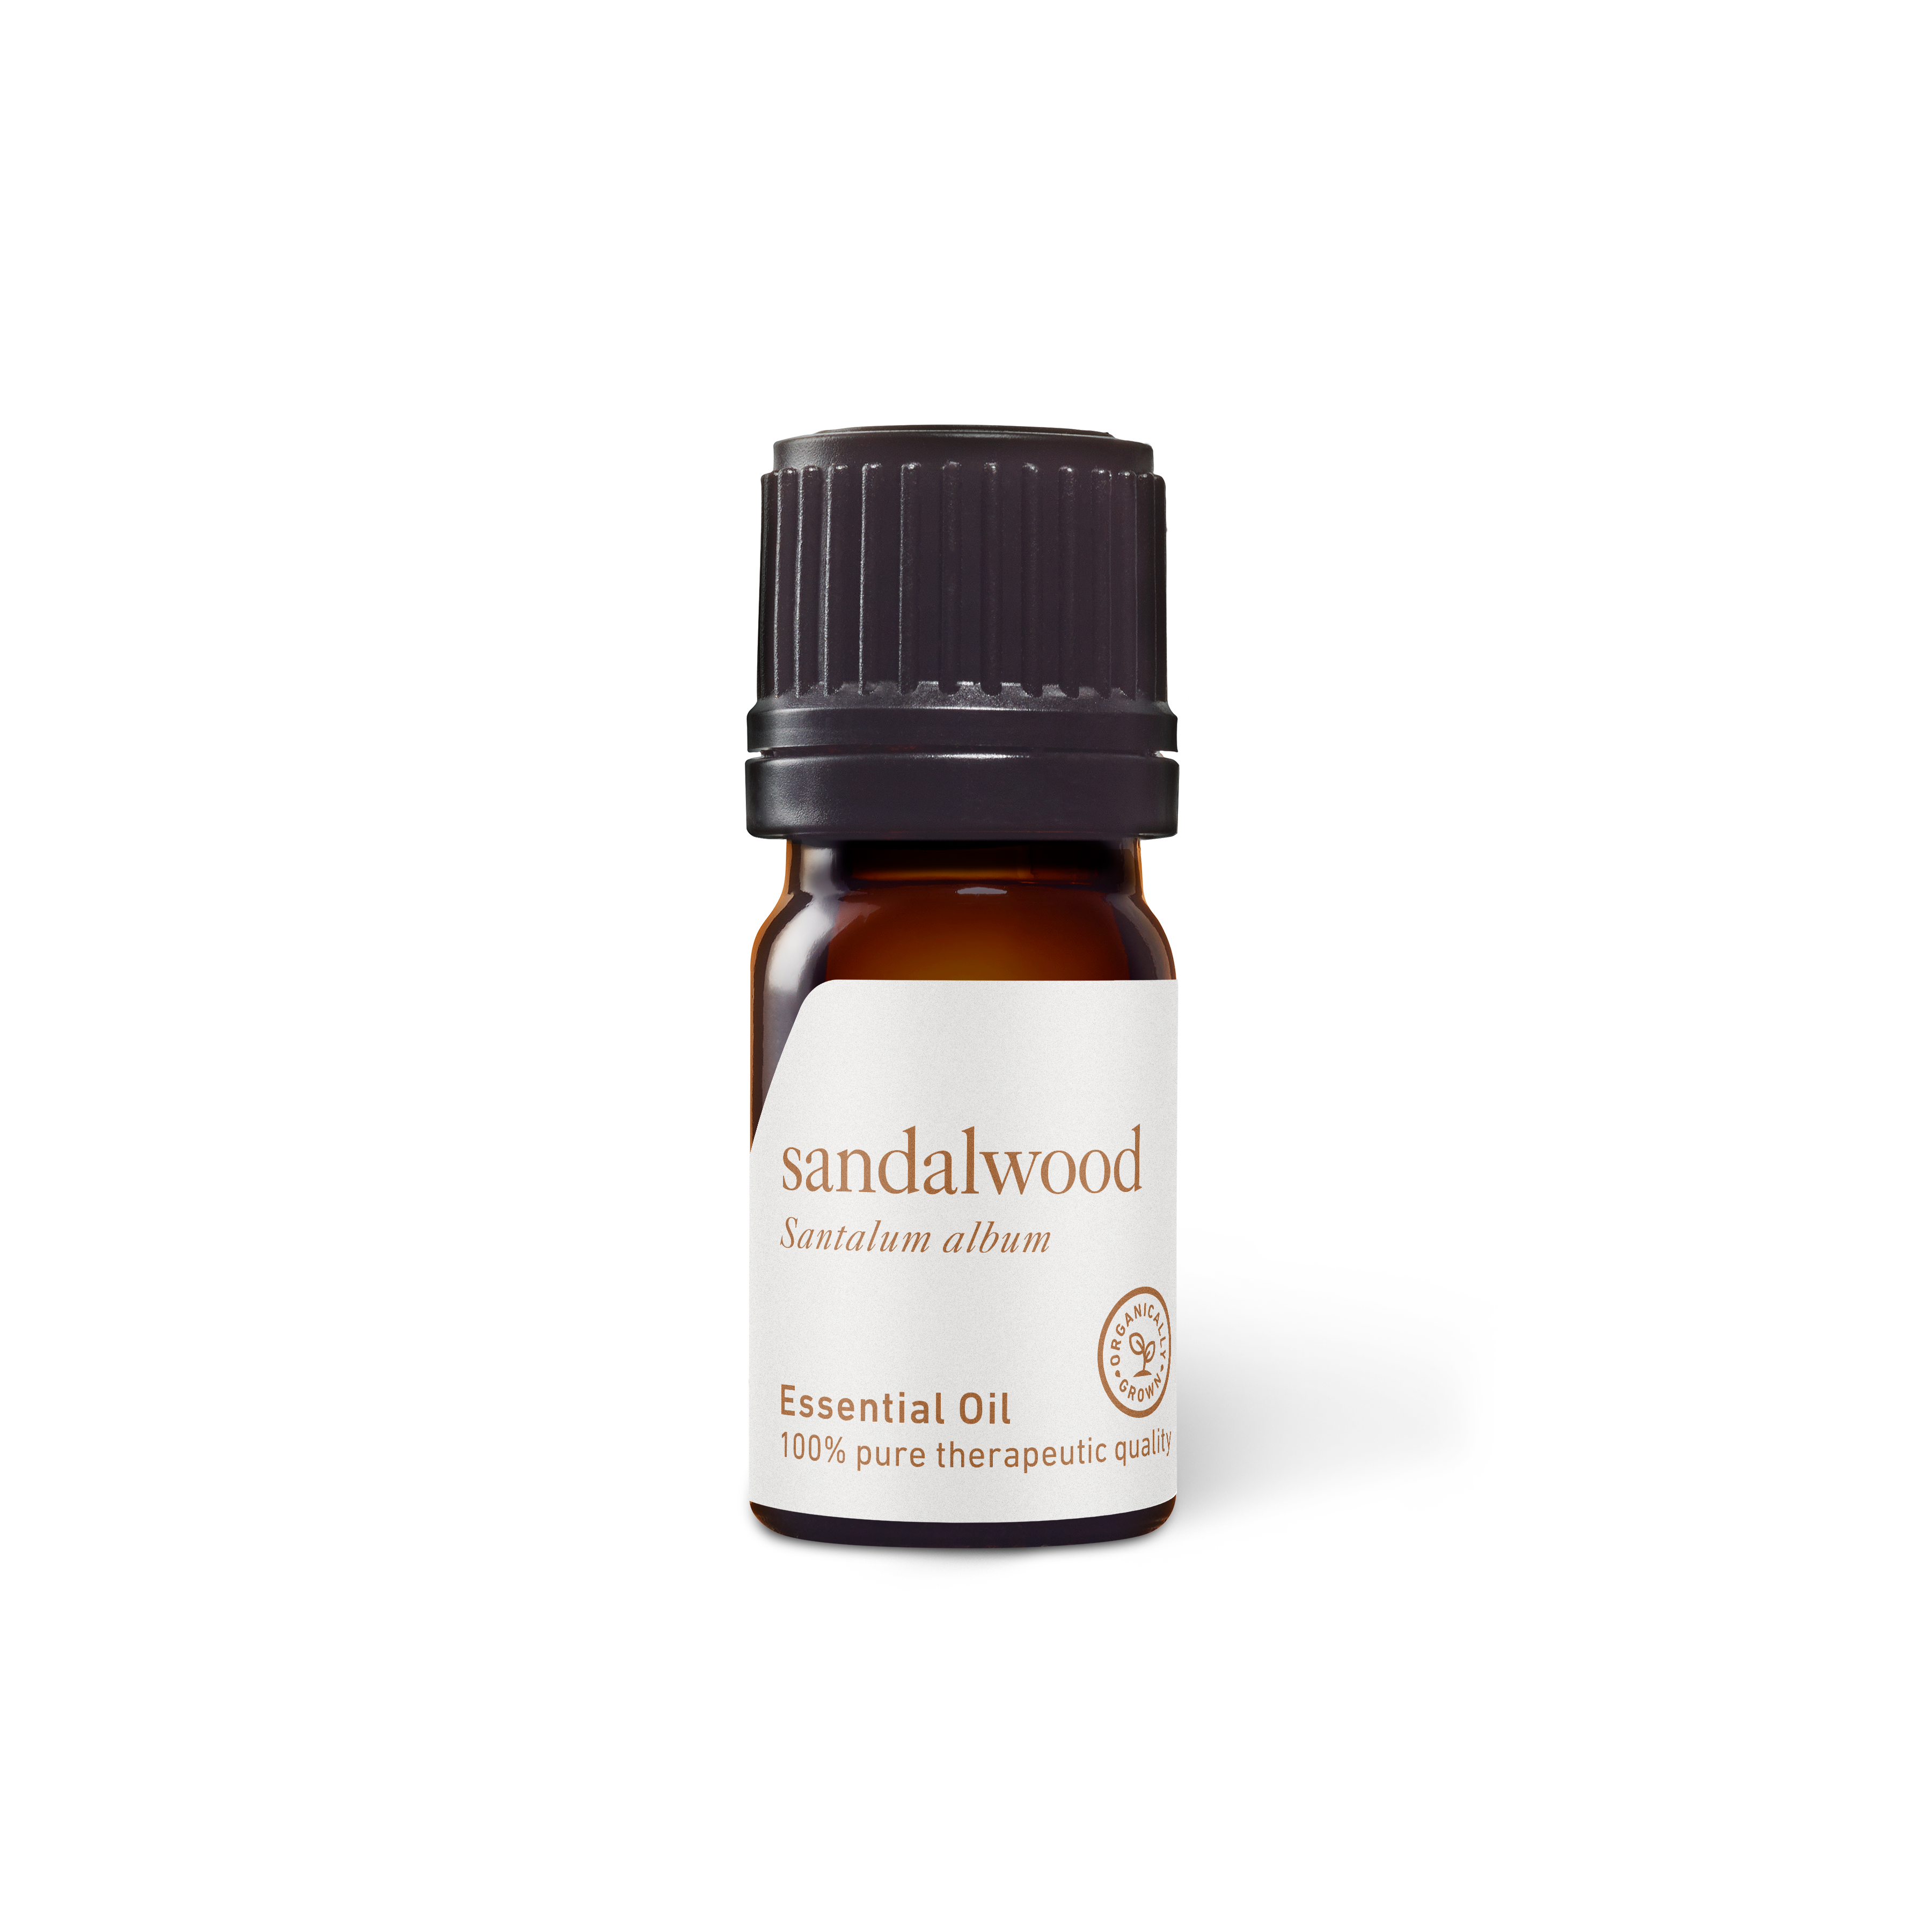 Sandalwood Scented Fragrance Oil 15ml/30ml Fragrance Oil for